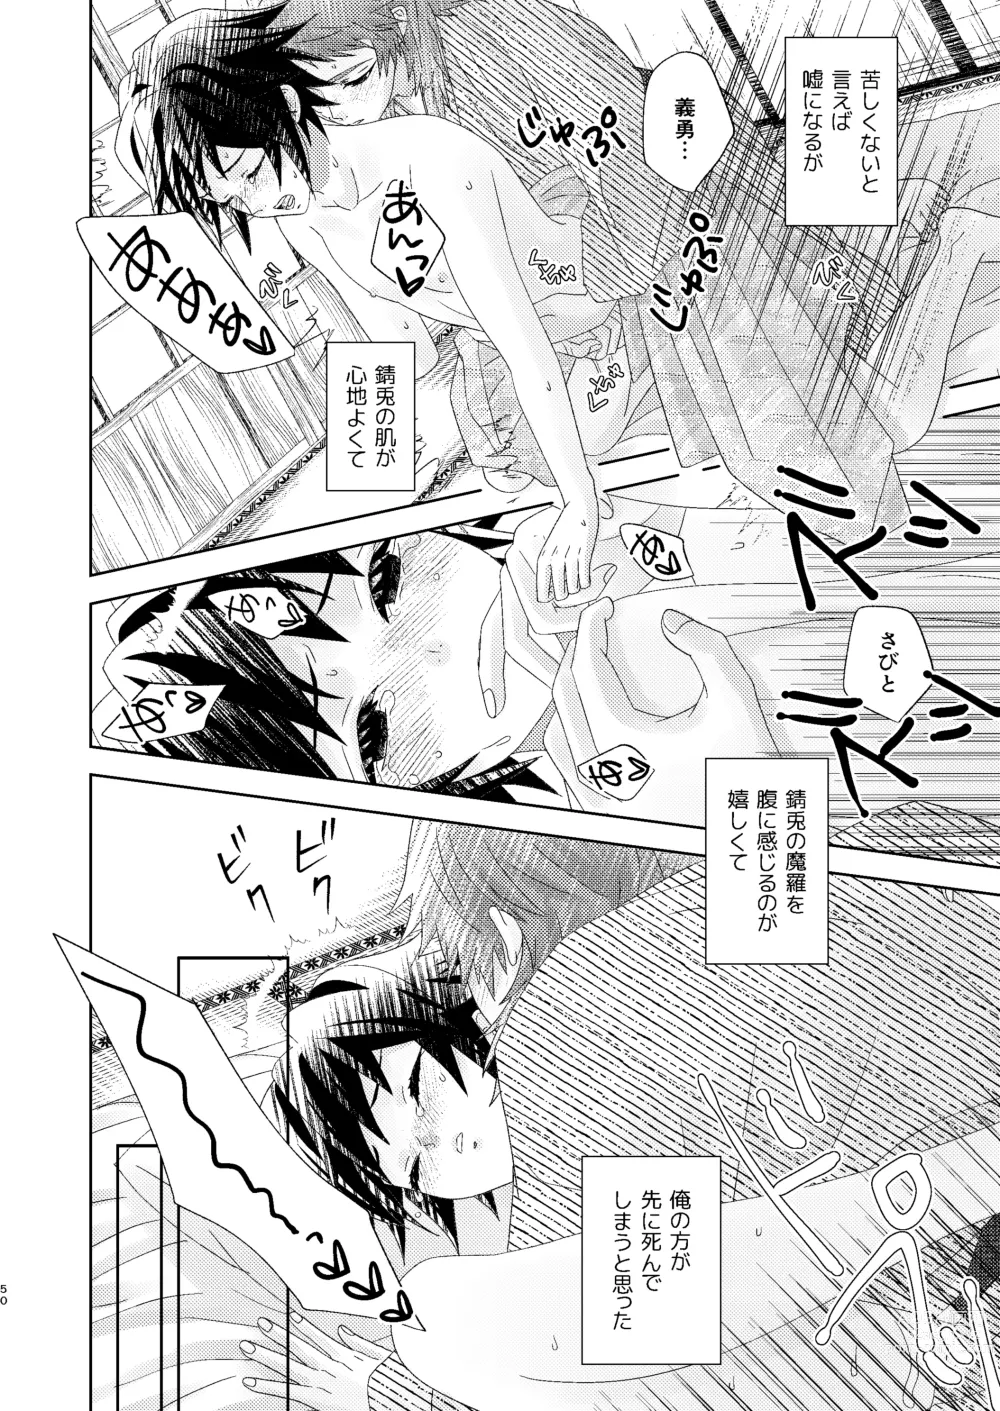 Page 49 of doujinshi Yuurei Kareshi no Koiwazurai